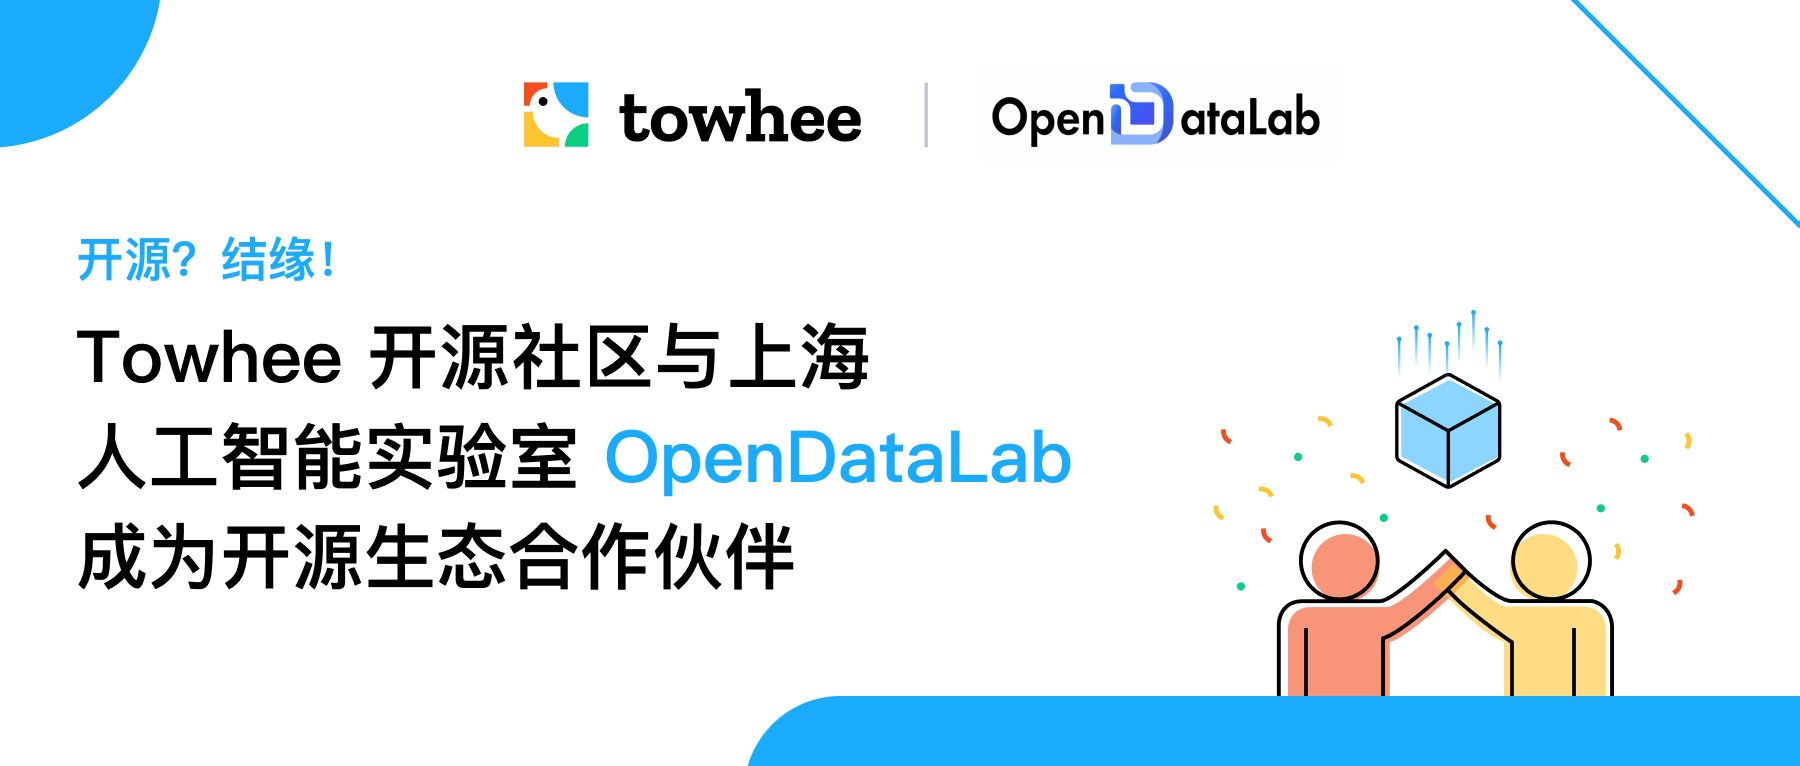 开源？结缘！Towhee 开源社区与上海人工智能实验室 OpenDataLab 成为开源生态合作伙伴